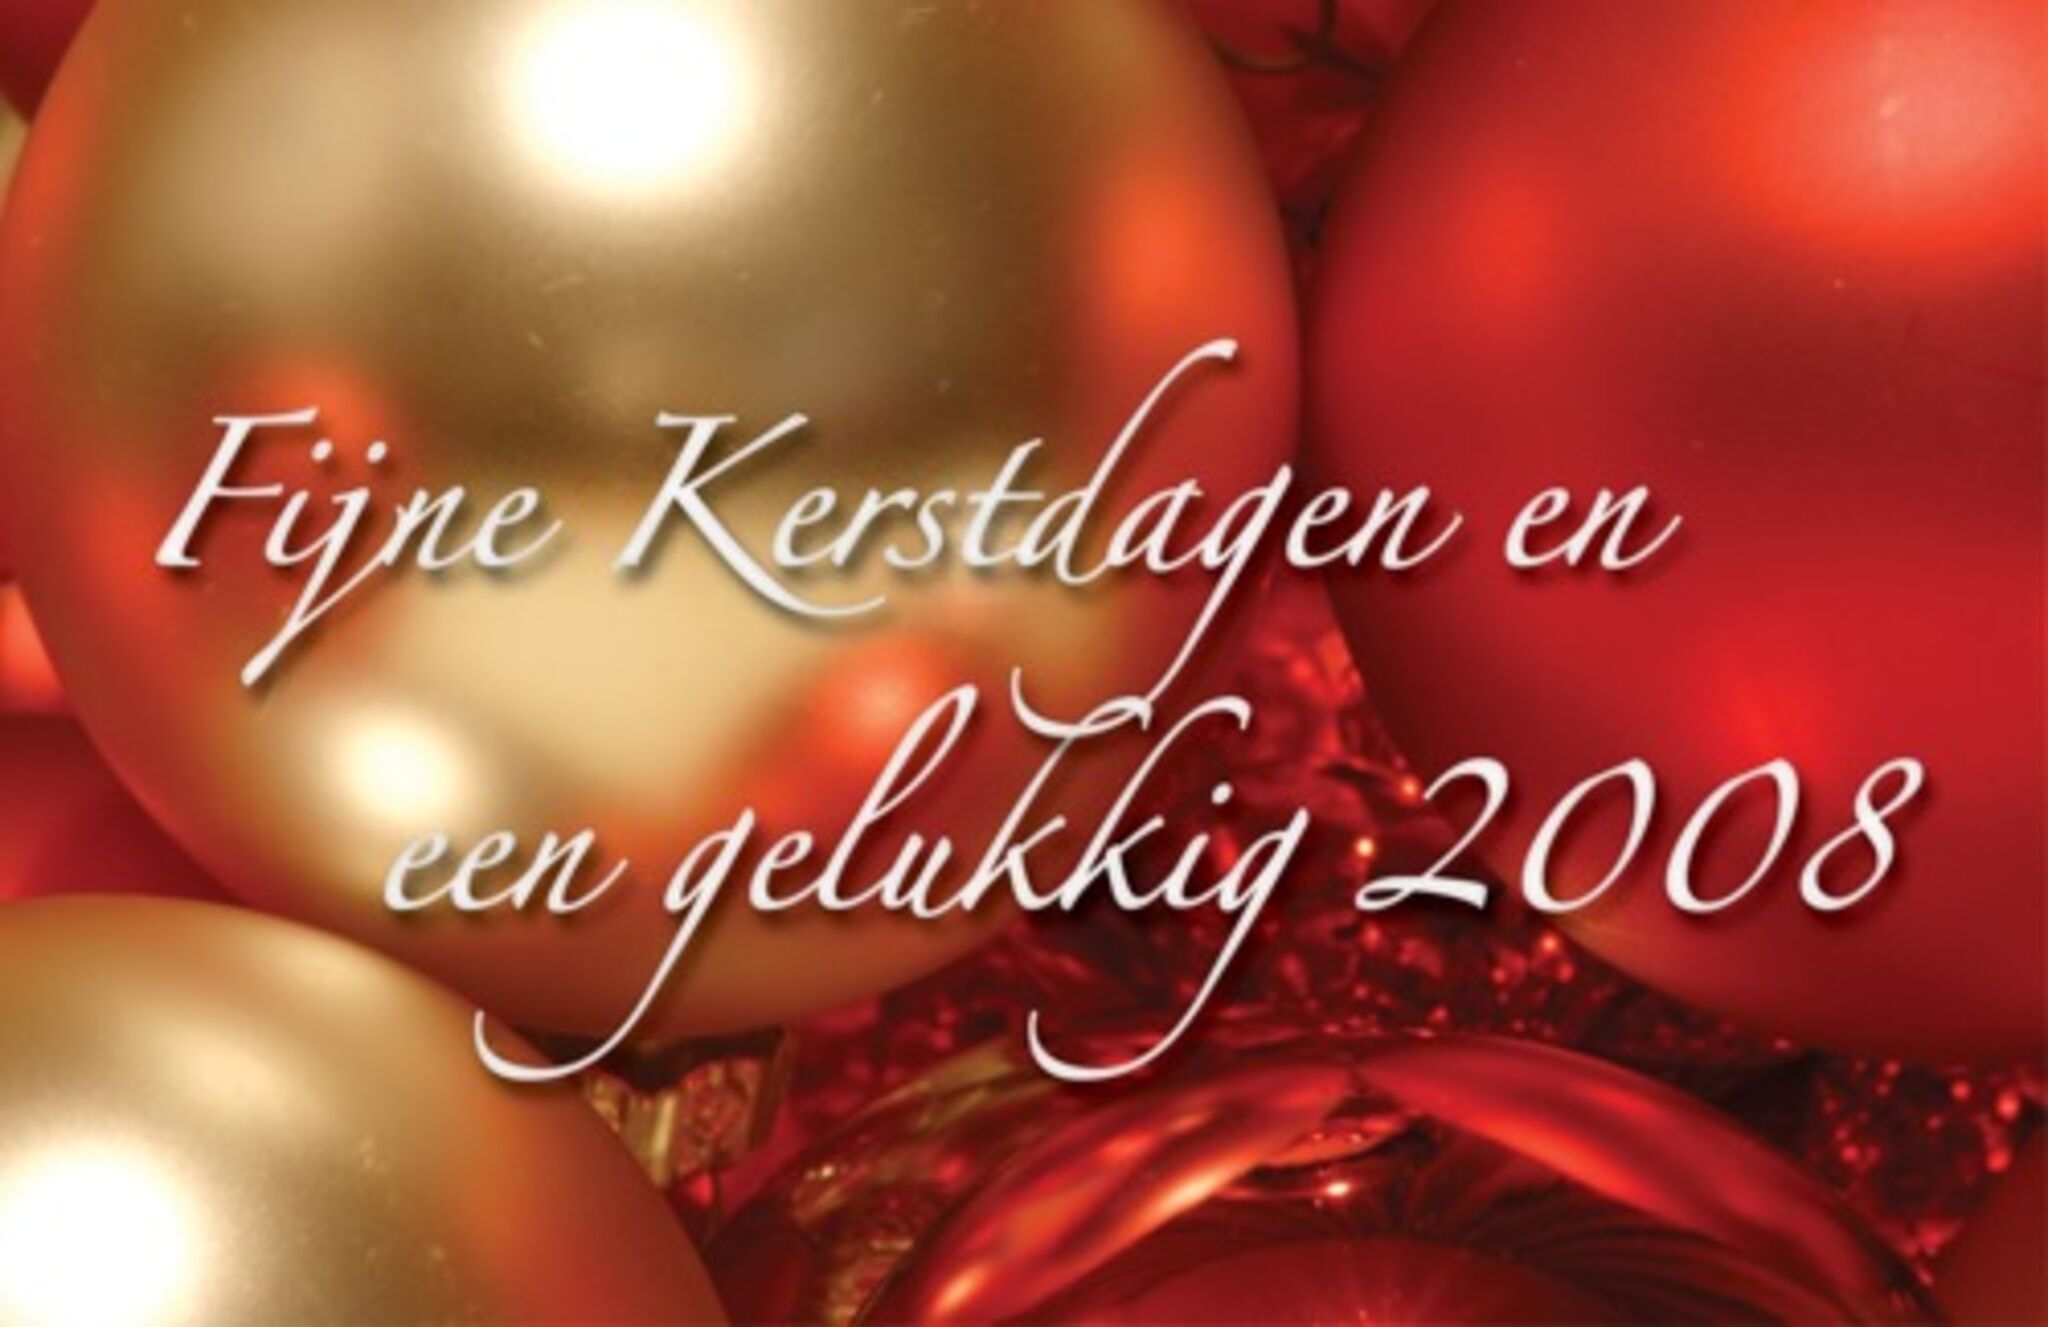 Merry Christmas - Happy 2008!!!’